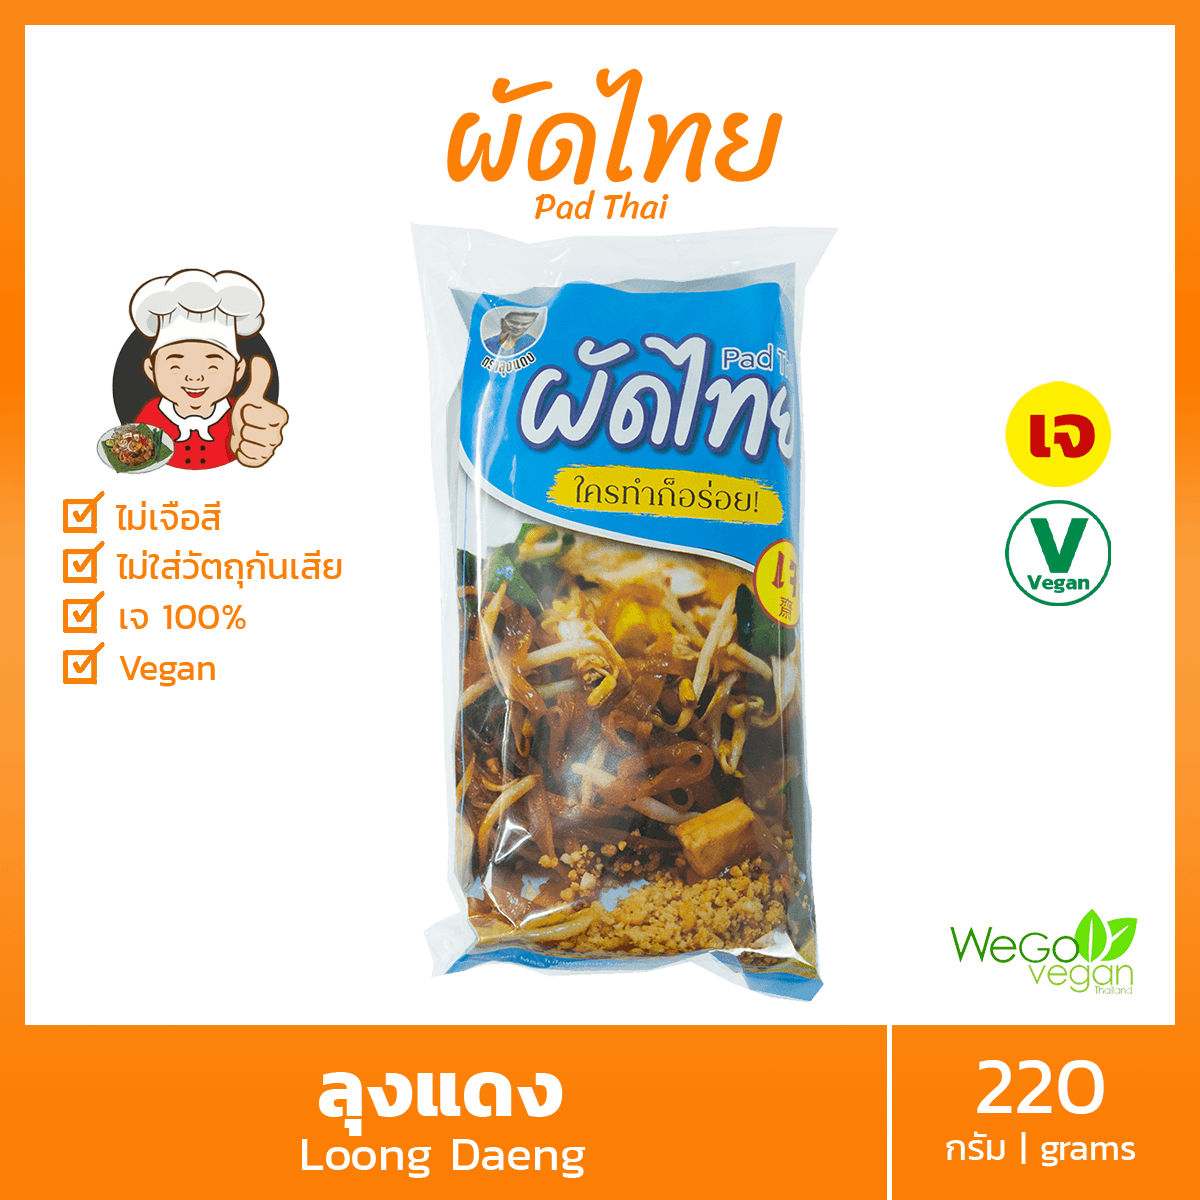 ผัดไทย (เส้นหมี่โคราช) สูตรเจ ลุงแดง 220 กรัม | ใครทำก็อร่อย Vegan Vegetarian Pad Thai อาหารเจ มังสวิรัติ